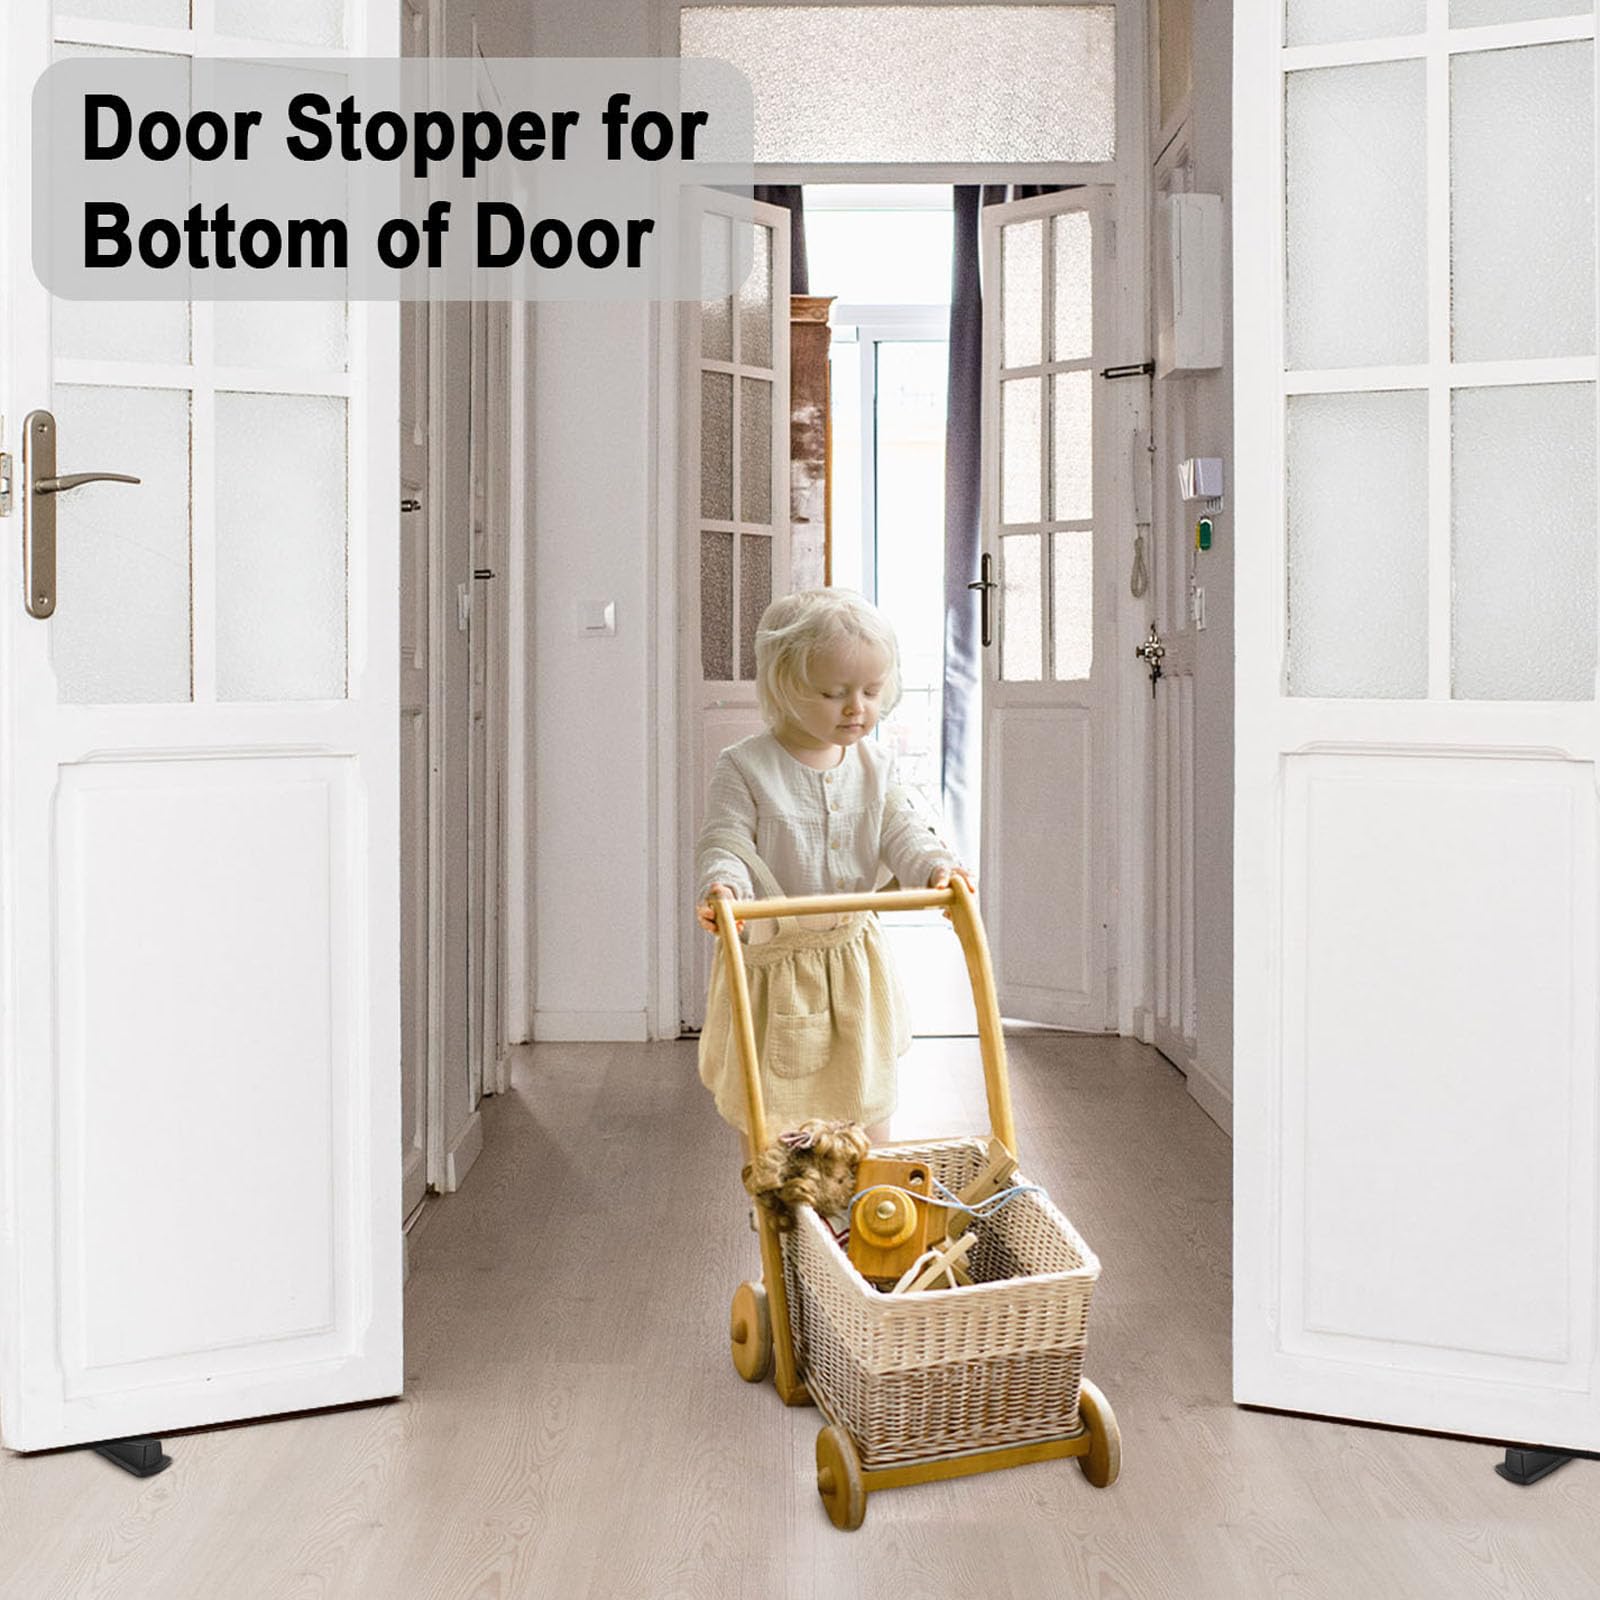 Beieverluck 24 Pack Door Stoppers for Bottom of Door Rubber Door Stop Wedge Sturdy Stackable Door Stops for Floor Wall Carpet Heavy Duty Door, Black